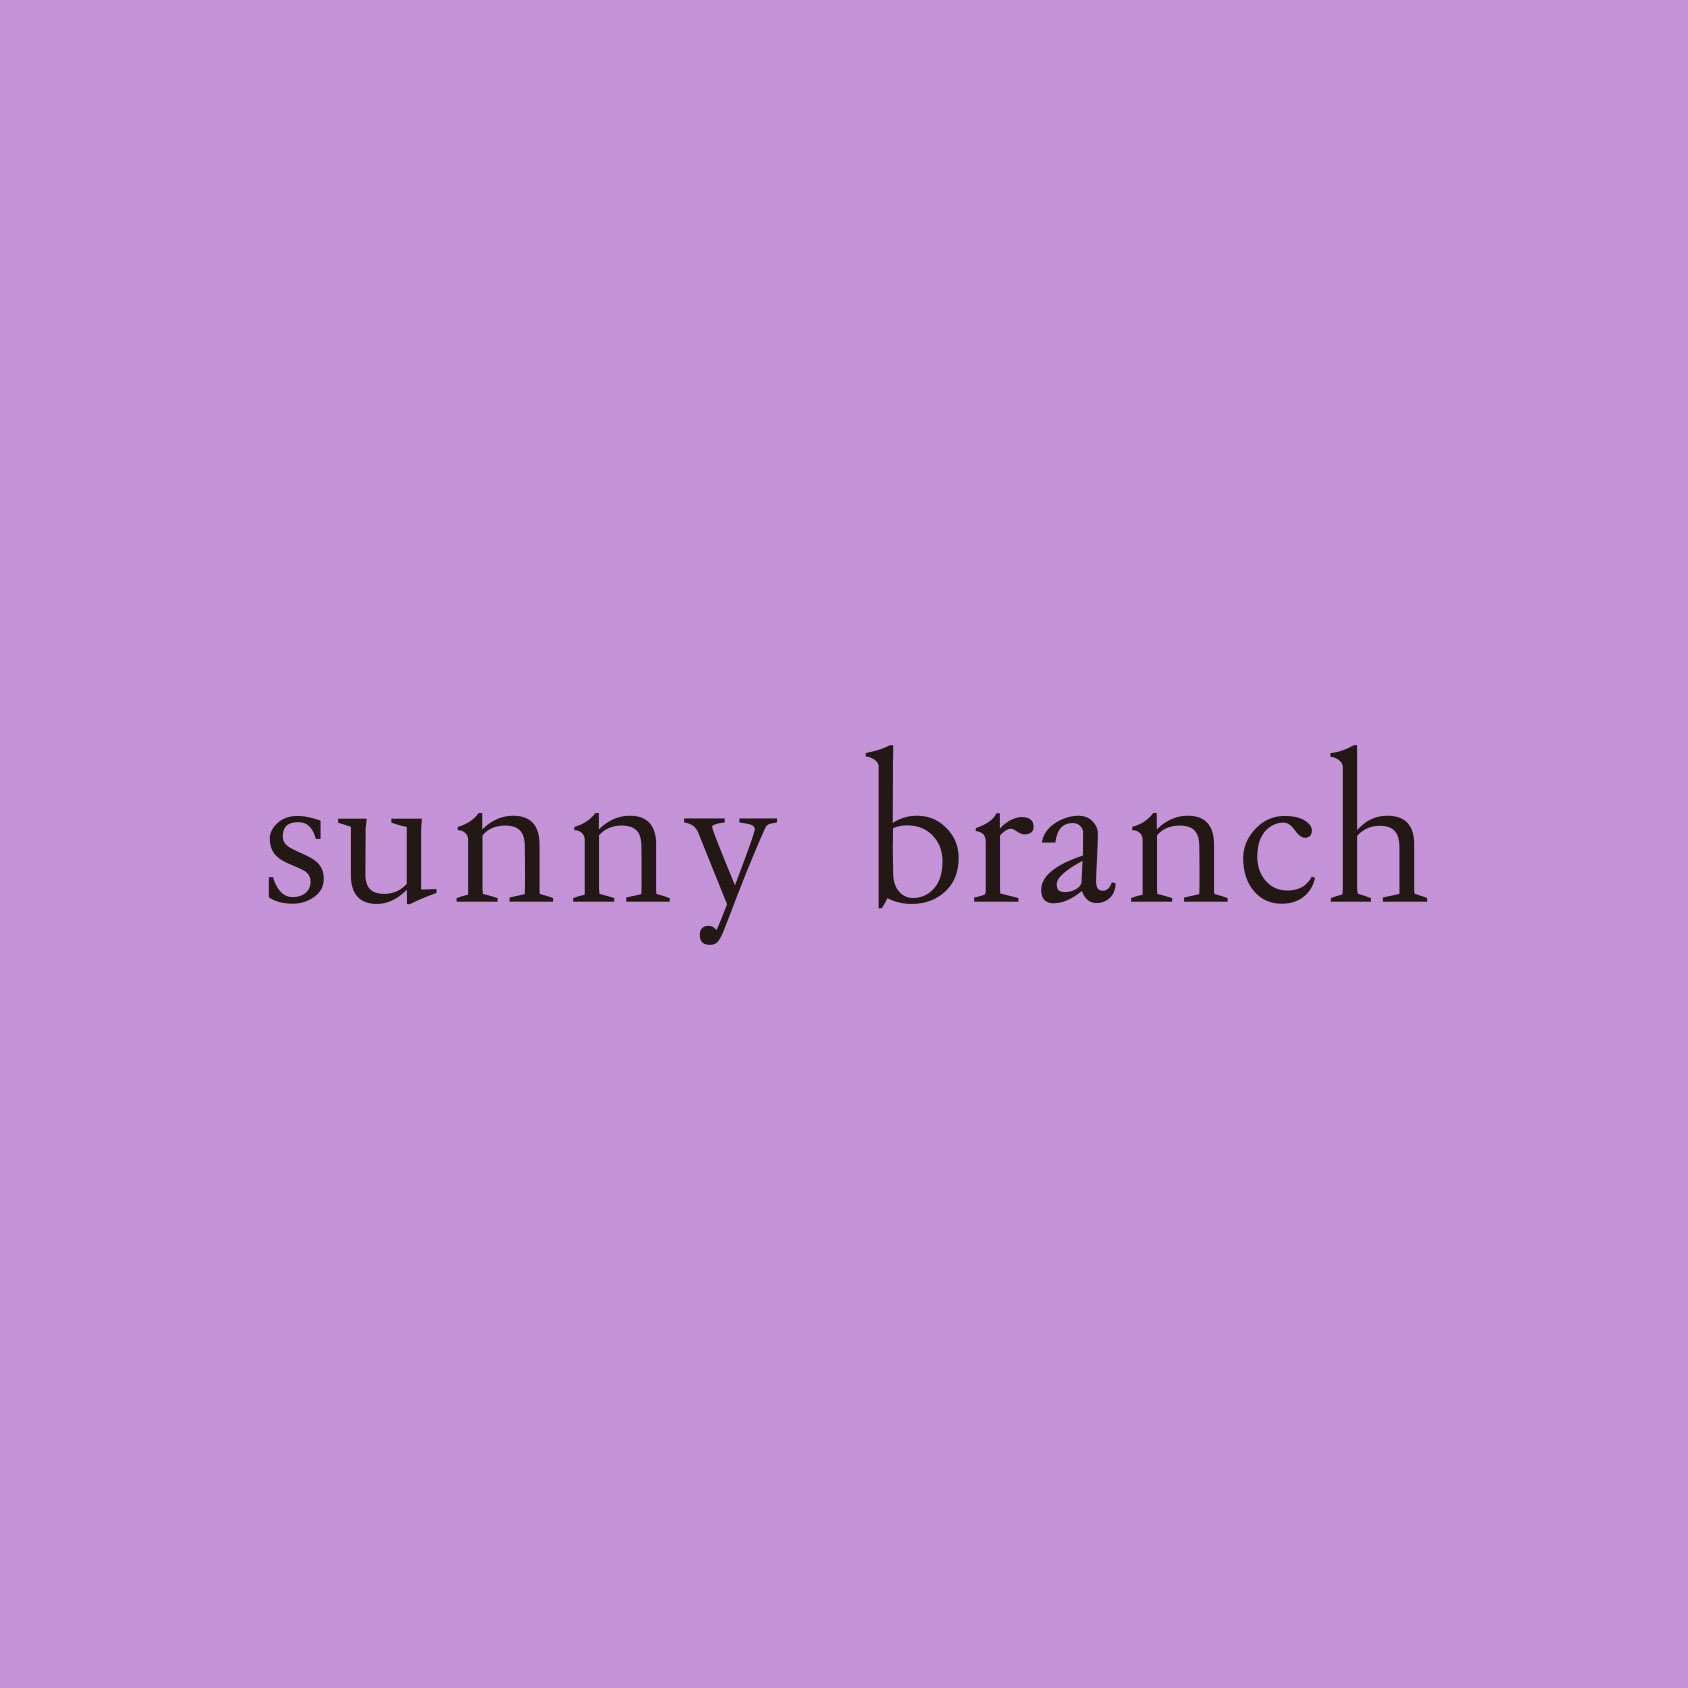 『sunny branch』ZOZOTOWNショップイメージ